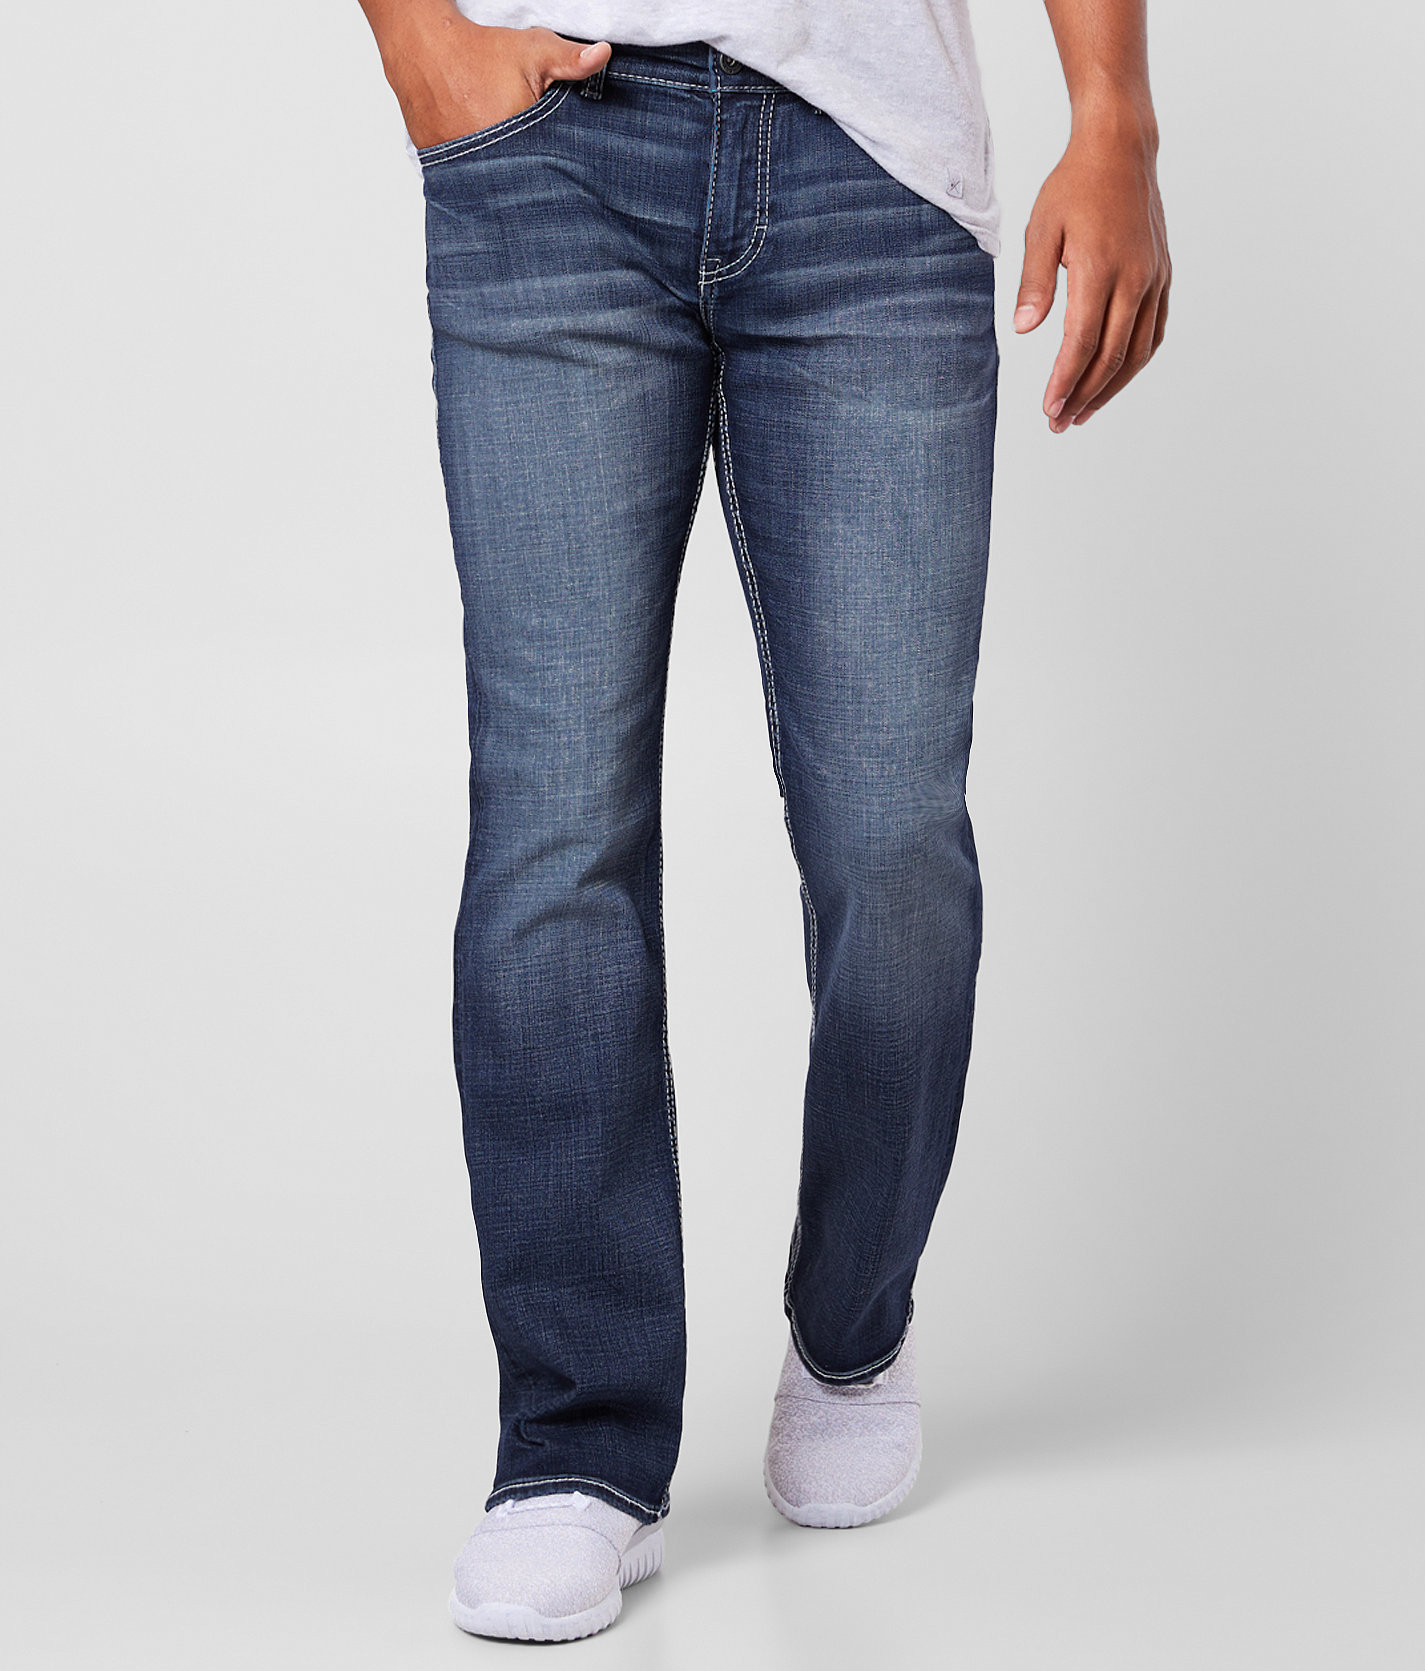 buckle bke aiden jeans